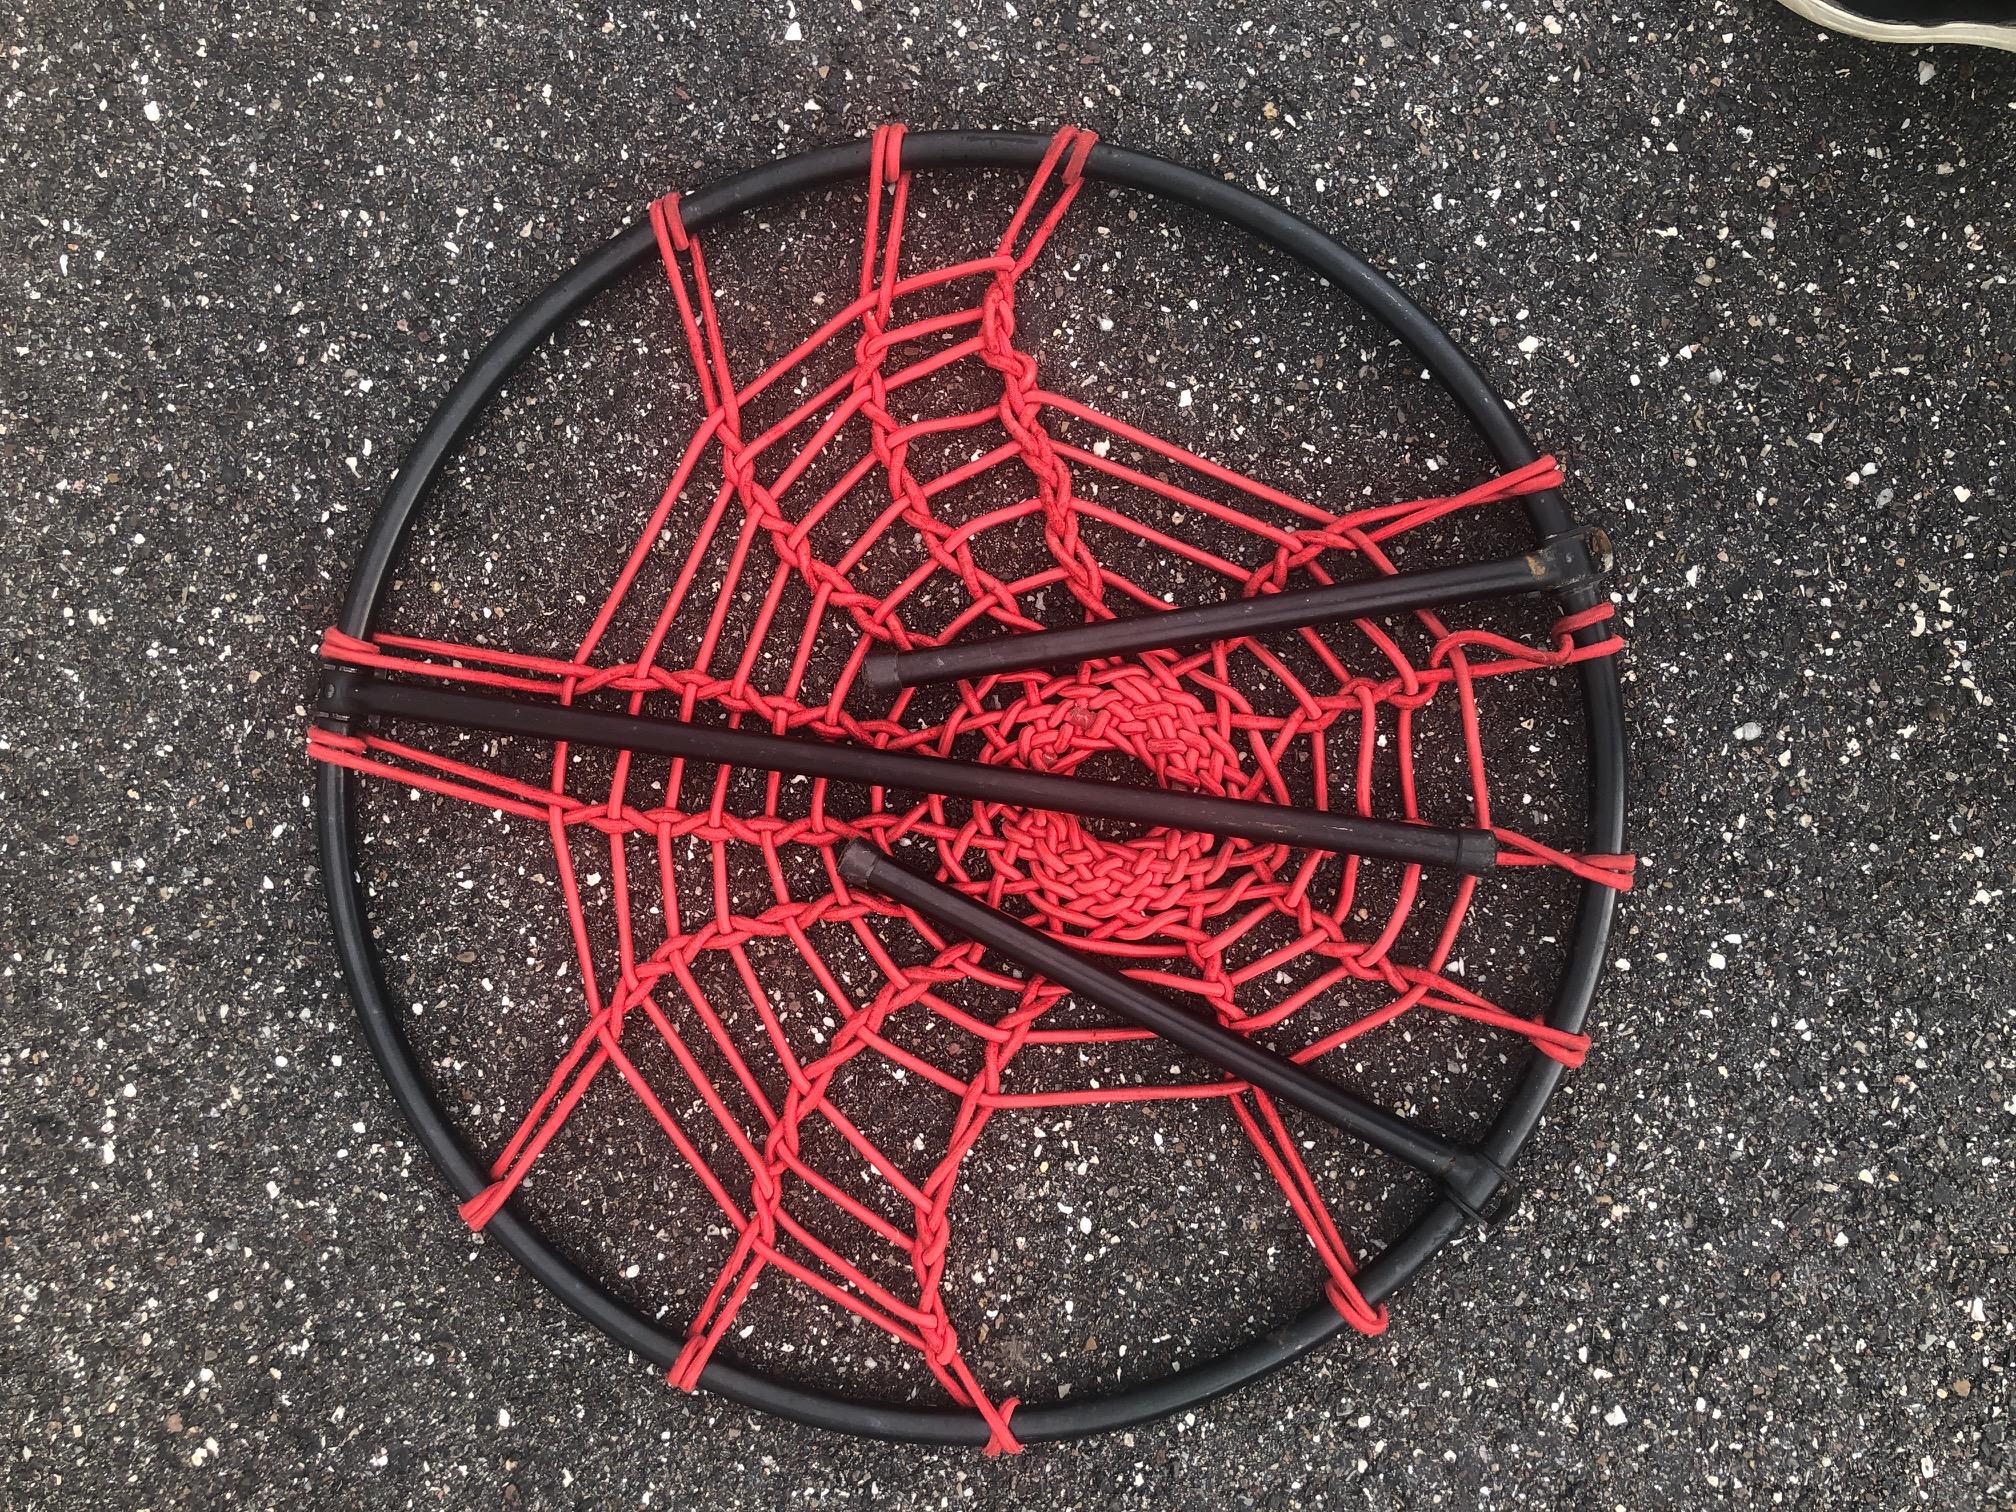 Fabelhafter Plan 'O' Spinnennetzstuhl, entworfen von Hoffer aus Frankreich, ca. 1958. Der kreisförmige Stahlrohrrahmen hat einen Sitz aus elastischer Schnur in Form eines Spinnennetzes, der Stuhl kann zusammengeklappt und zur Aufbewahrung aufgehängt